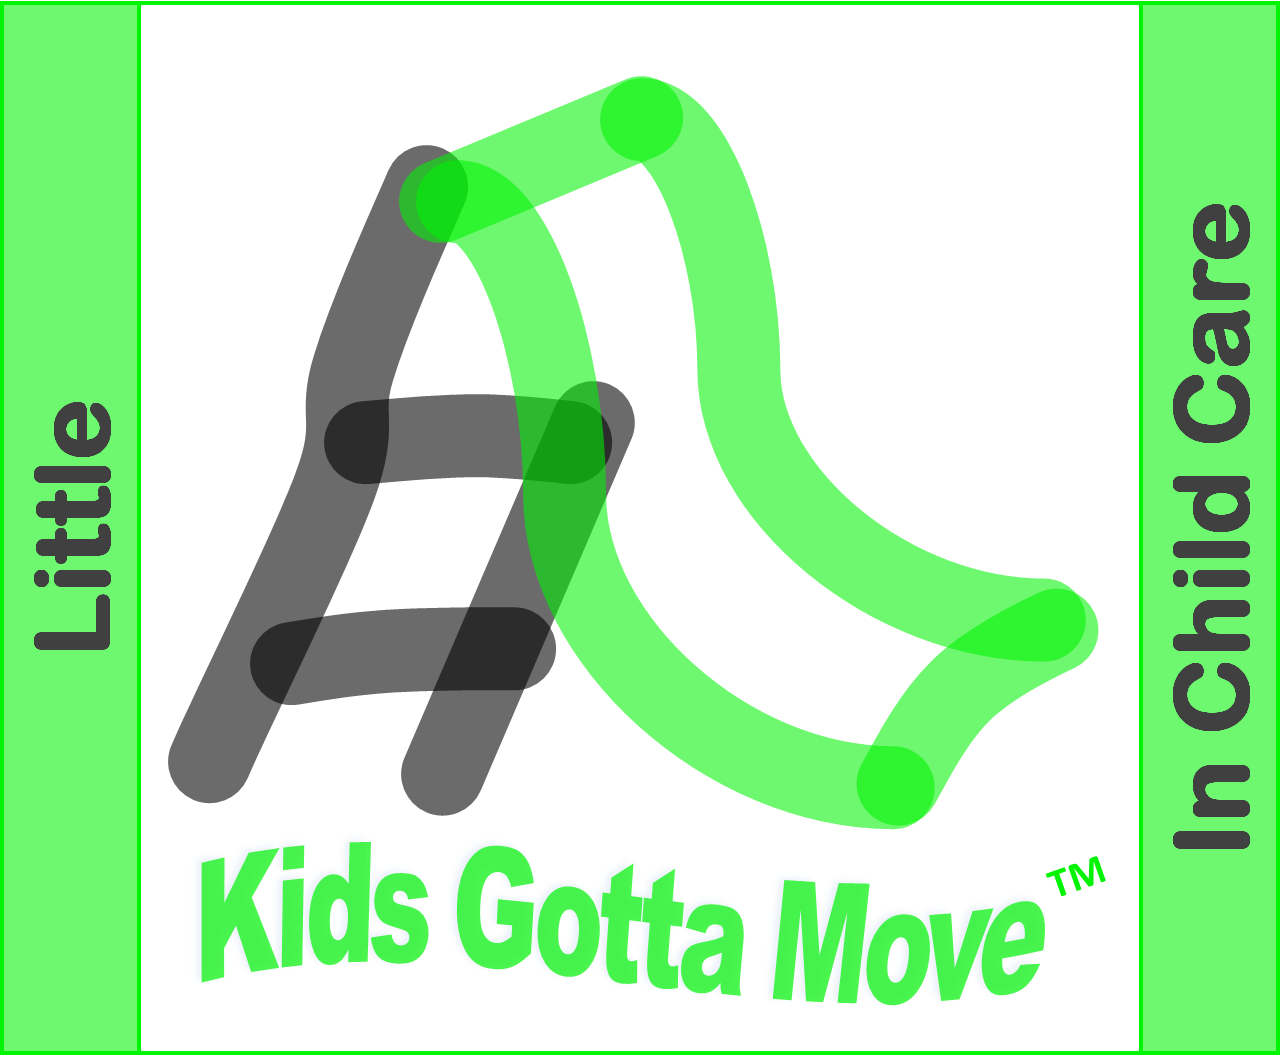 Little Kids Gotta Move™ In Child Care - Graphic Design (1281x1056)